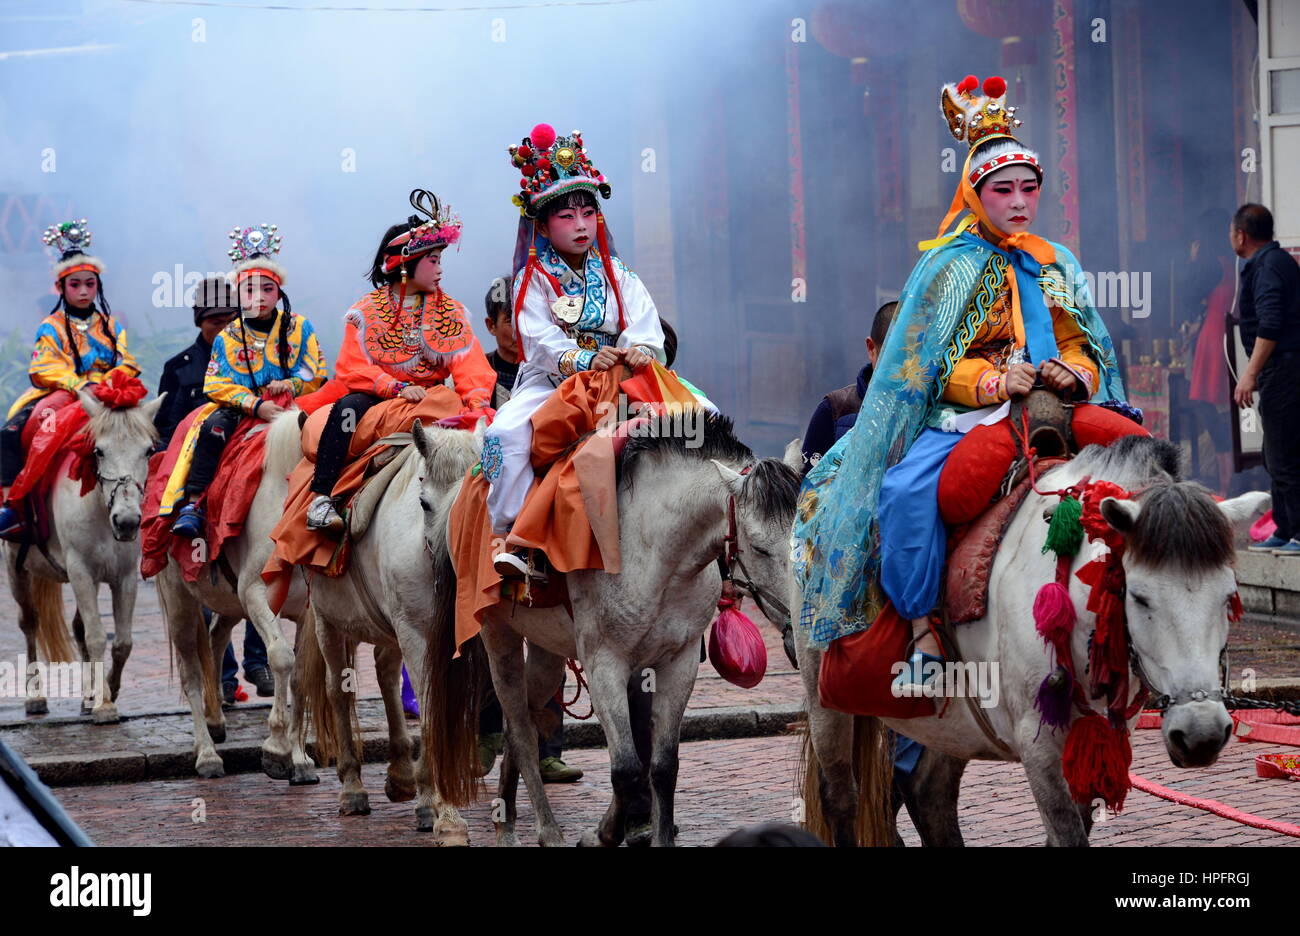 Putian, Putian città del sud-est della Cina di provincia del Fujian. Il 22 febbraio, 2017. I bambini sfilano a cavallo nel villaggio Yangwei, Putian città del sud-est della Cina di provincia del Fujian, 22 febbraio, 2017. I bambini vestiti da personaggi leggendari sfilano per le strade qui sul ventiseiesimo giorno del primo mese del calendario lunare cinese Si tratta di una lunga tradizione di pregare per la pace e la prosperità e per un buon raccolto. Credito: Zhang Guojun/Xinhua/Alamy Live News Foto Stock